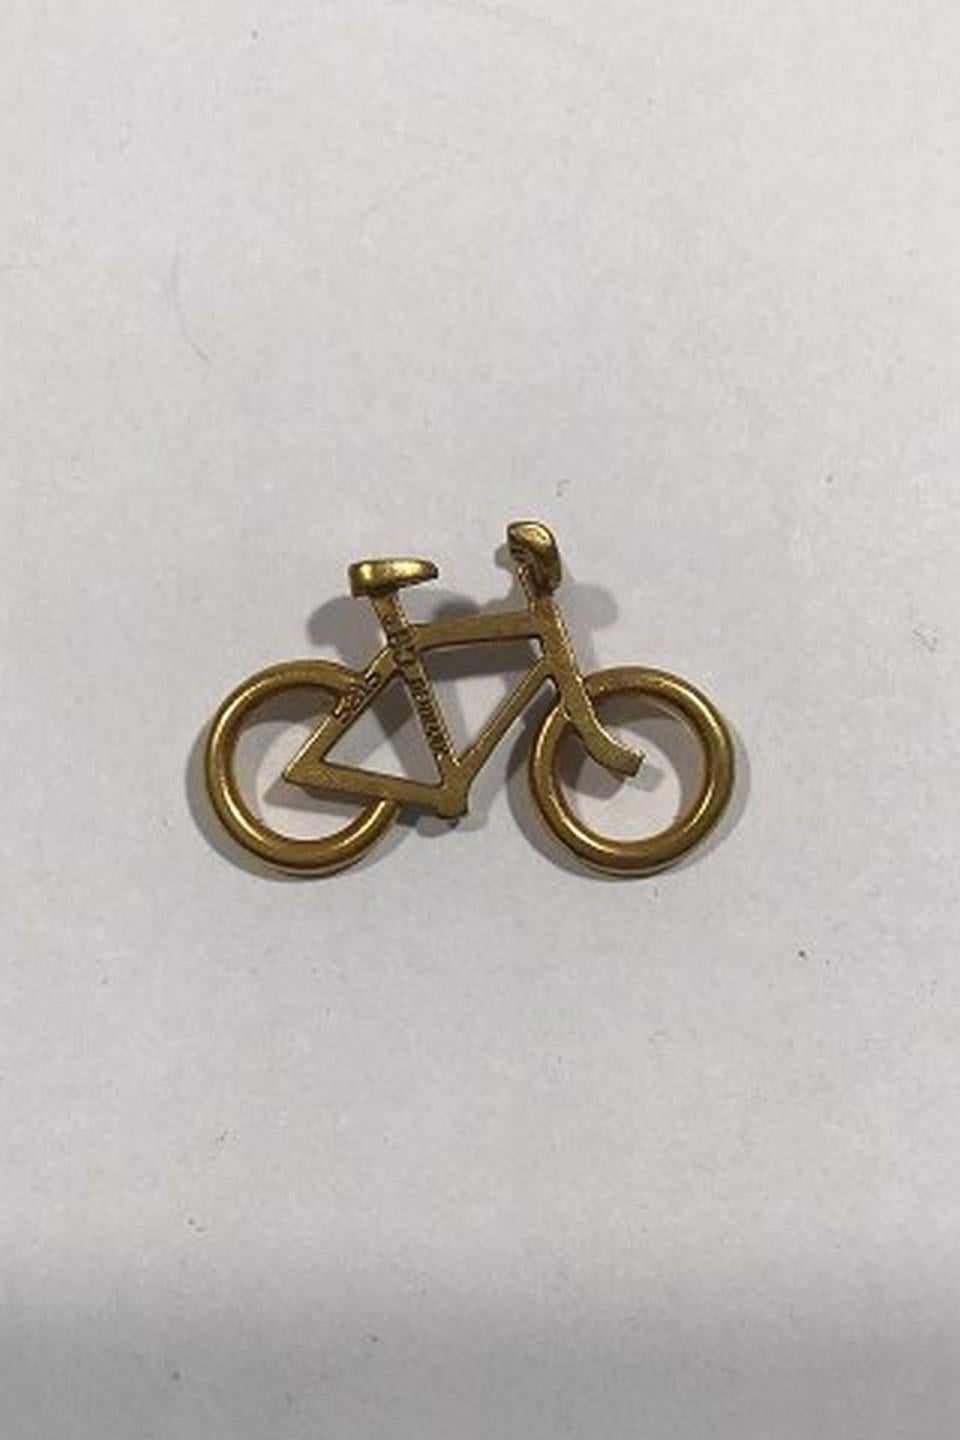 Georg Jensen Gilt Brass Men's Bicycle Pendant No 5215. 
Design by Ole Bent Petersen Measures 3 cm x 2 cm(1 3/16 in x 0 25/32 in) 
Weight 2.6 gr/0.09 oz
Item no.: 438460